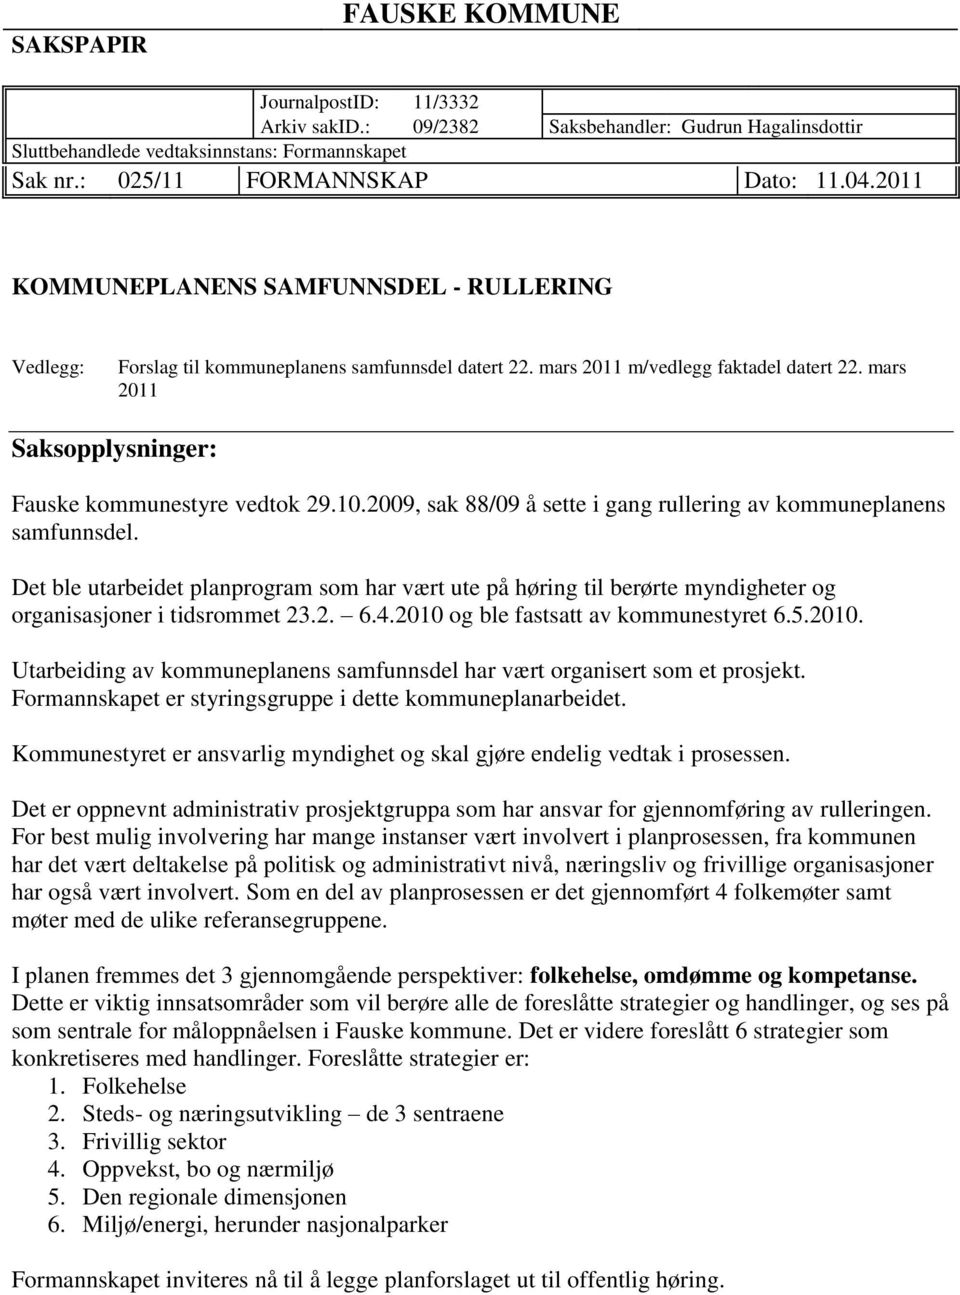 mars 2011 Saksopplysninger: Fauske kommunestyre vedtok 29.10.2009, sak 88/09 å sette i gang rullering av kommuneplanens samfunnsdel.